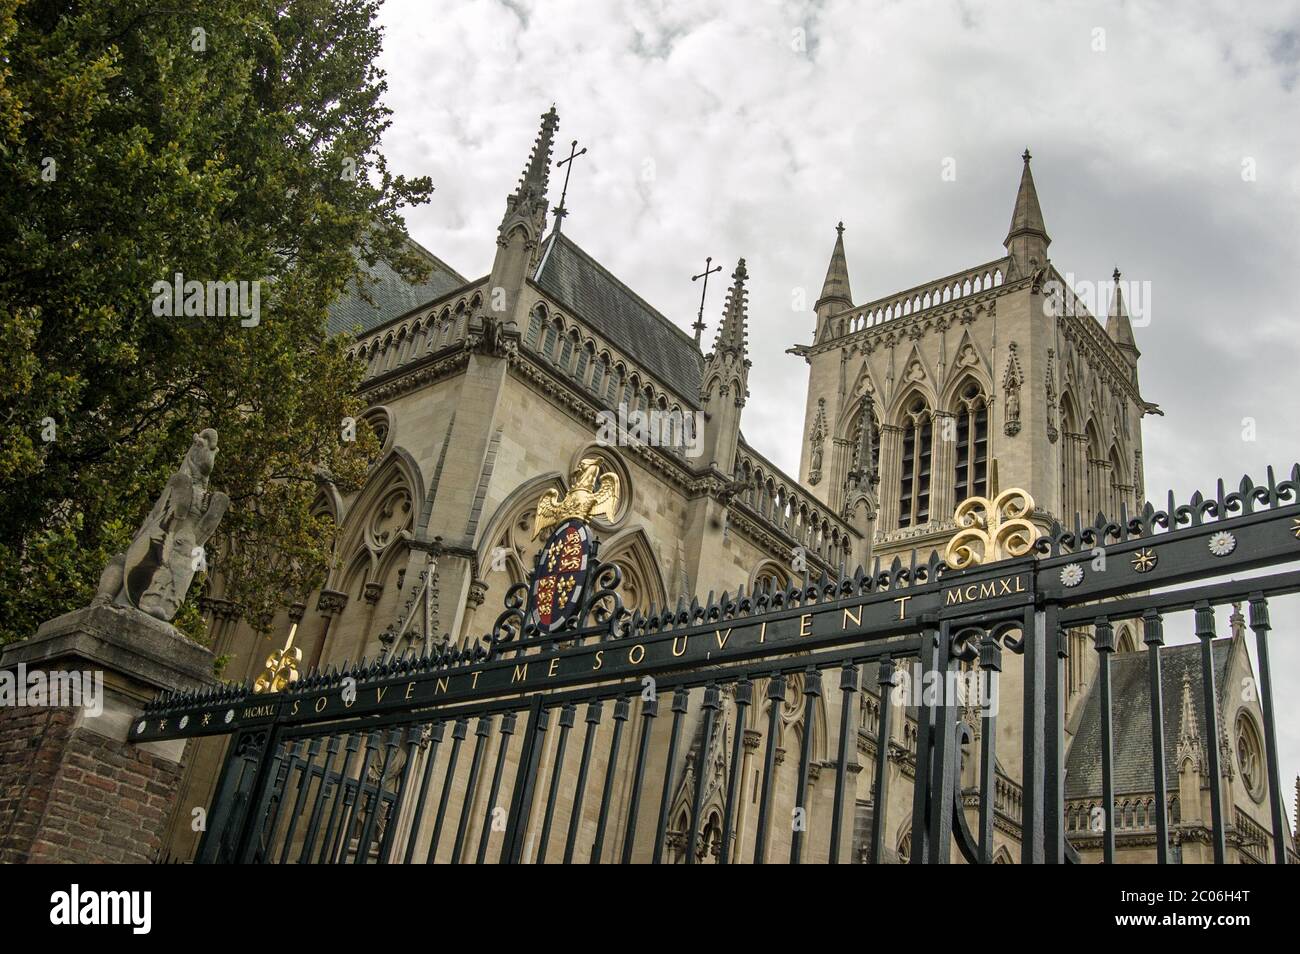 Vue sur la chapelle Saint-Jean College, Cambridge. Conçu par l'architecte Sir George Gilbert Scott dans les années 1860. Fait partie de l'Université de Cambri Banque D'Images